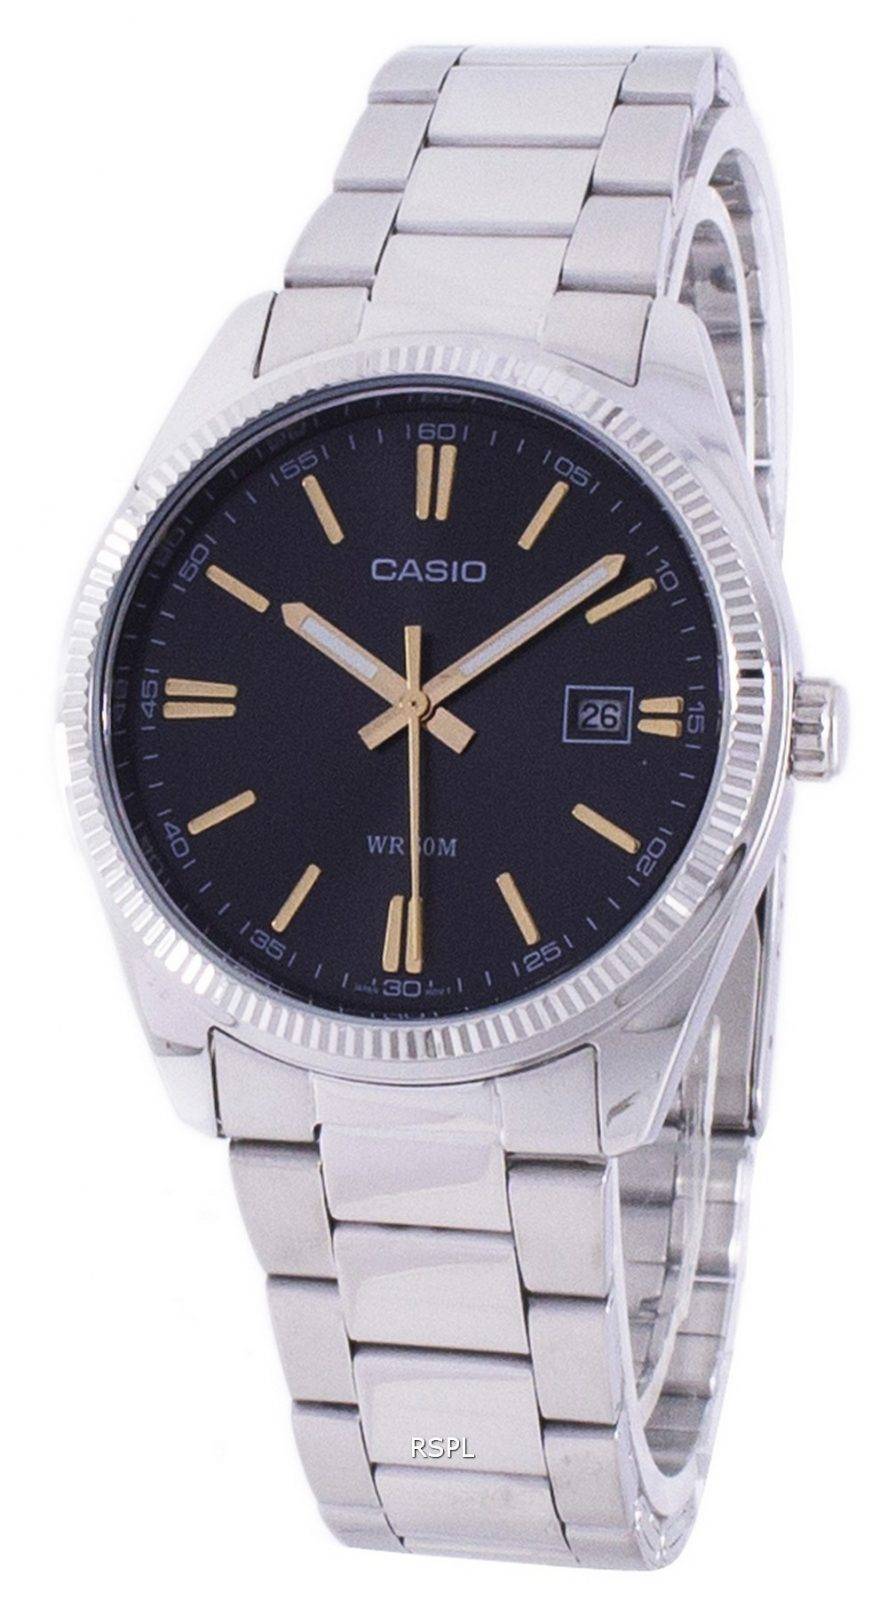 Casio Enticer Quartz MTP-1302D-1A2V MTP1302D-1A2V Men's Watch ...